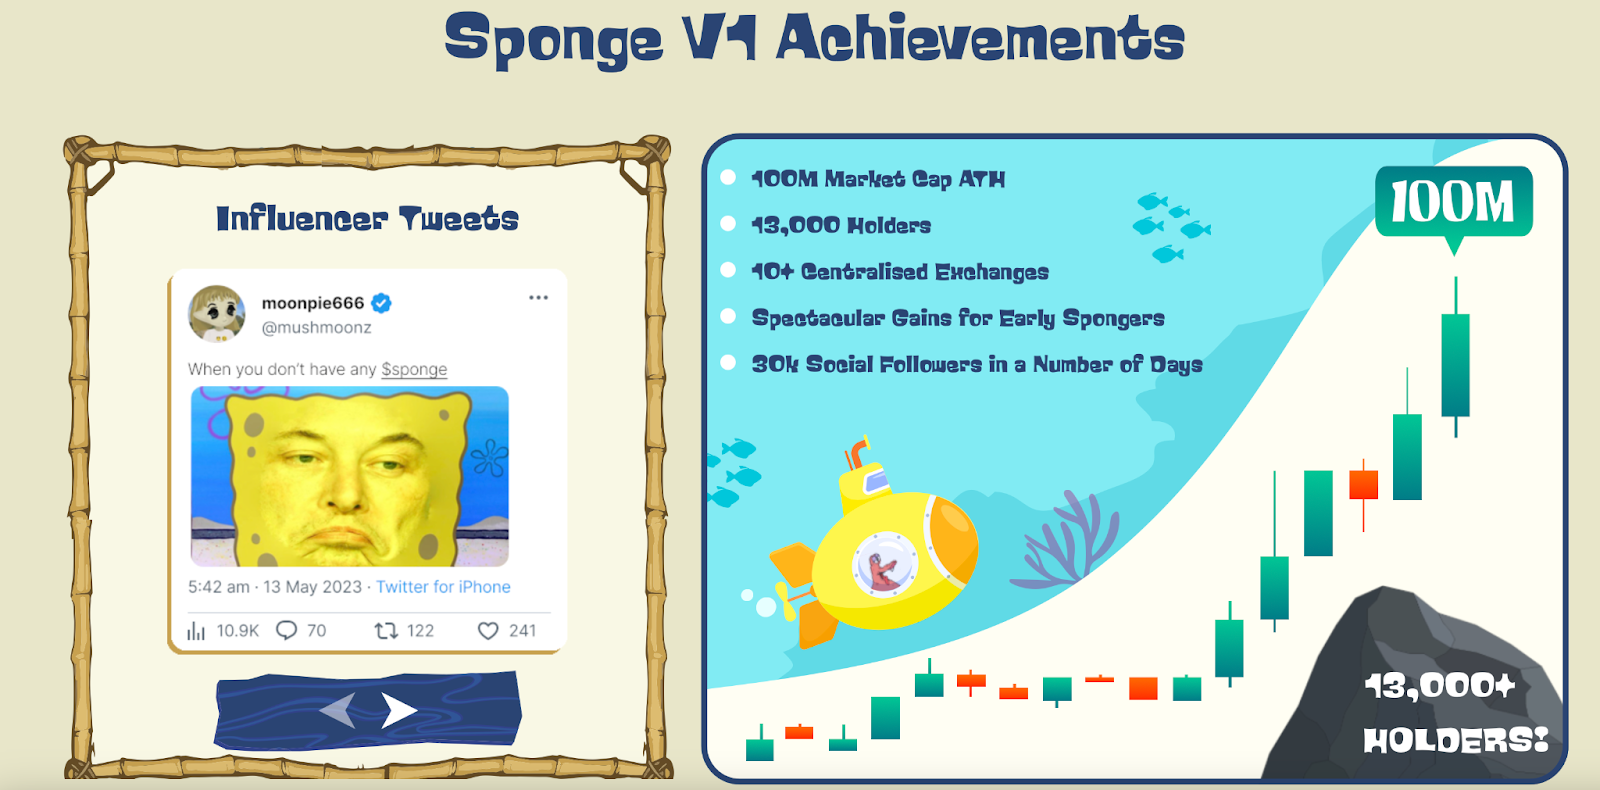 Sponge V2 